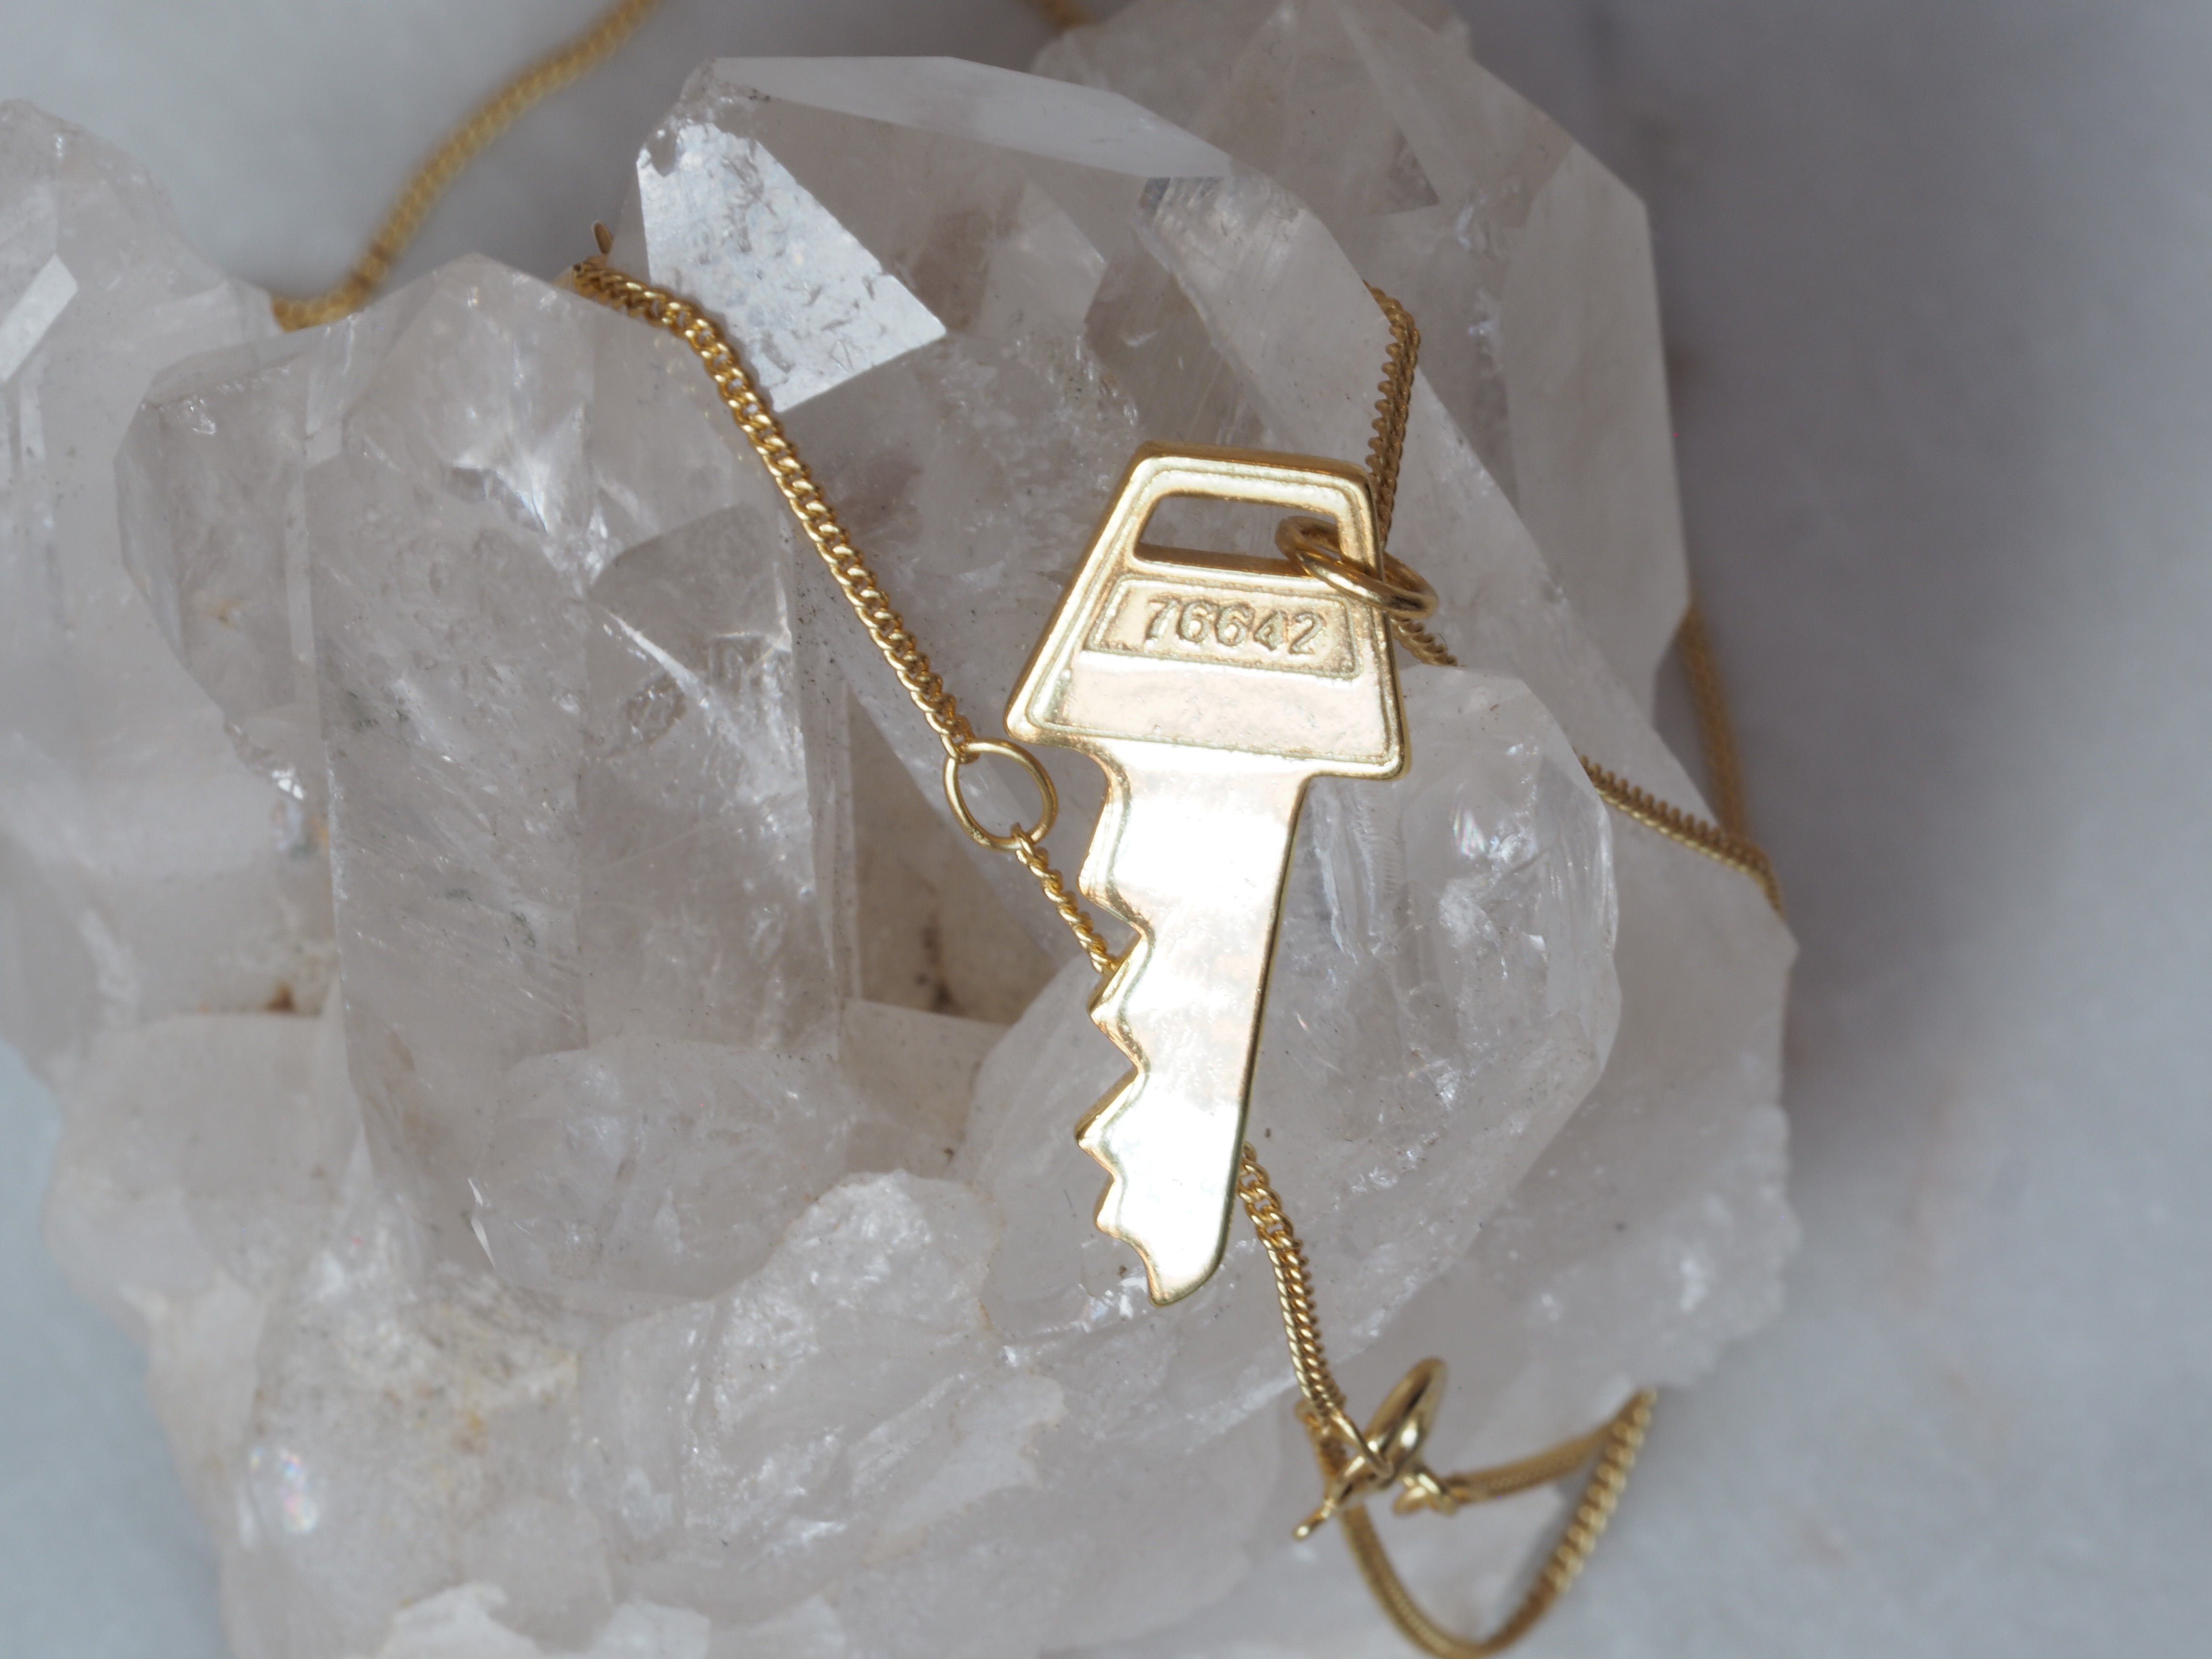 Mini Key Pendant Necklace